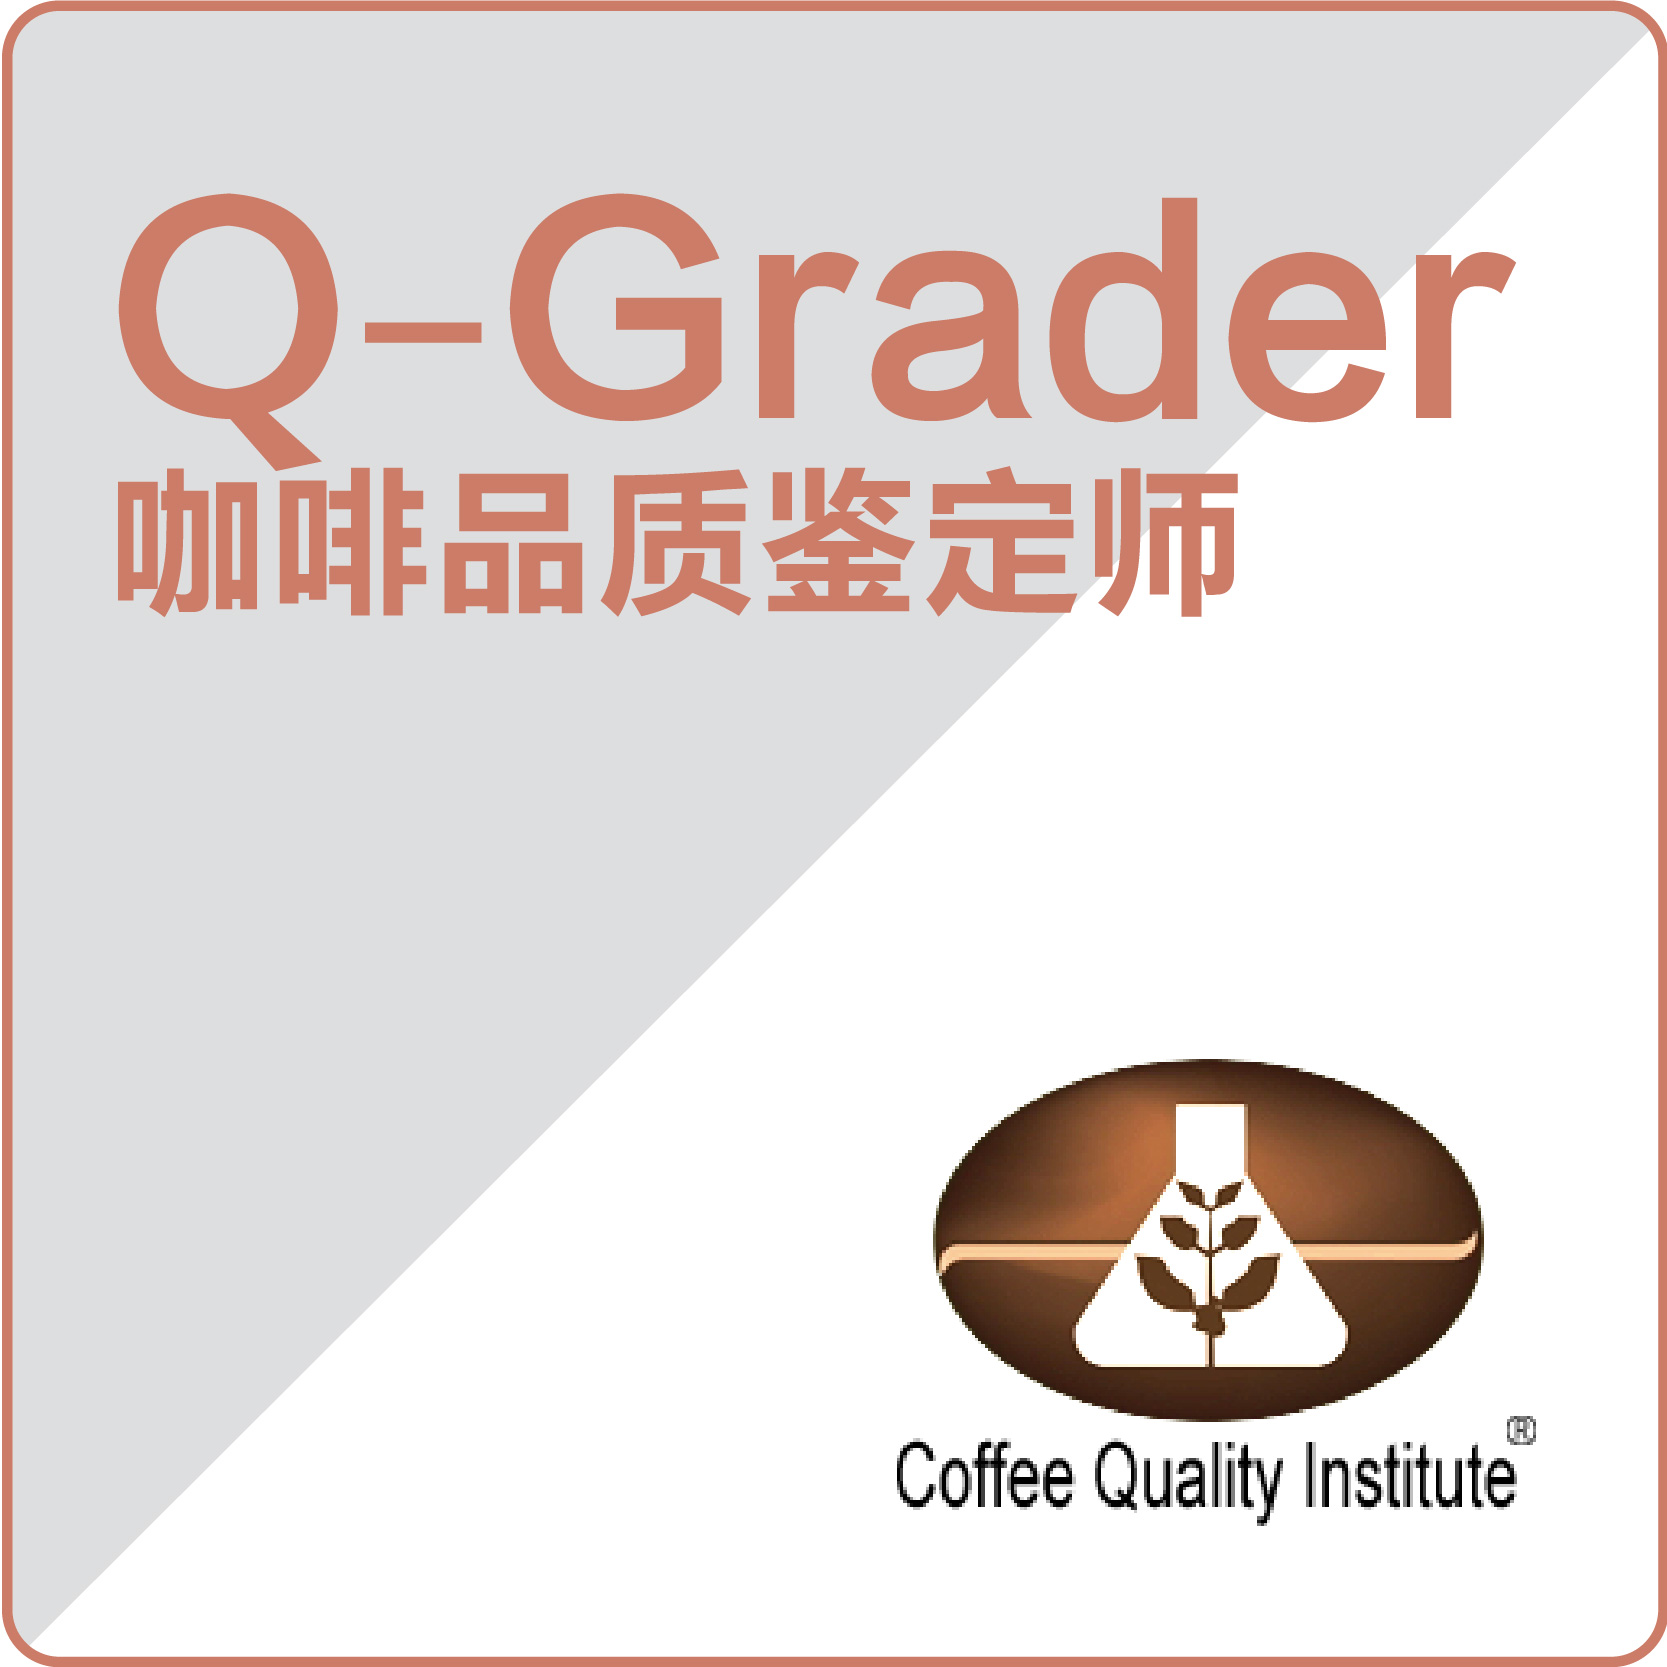 【北京补考】-CQI Q-Grader 国际咖啡品质鉴定师